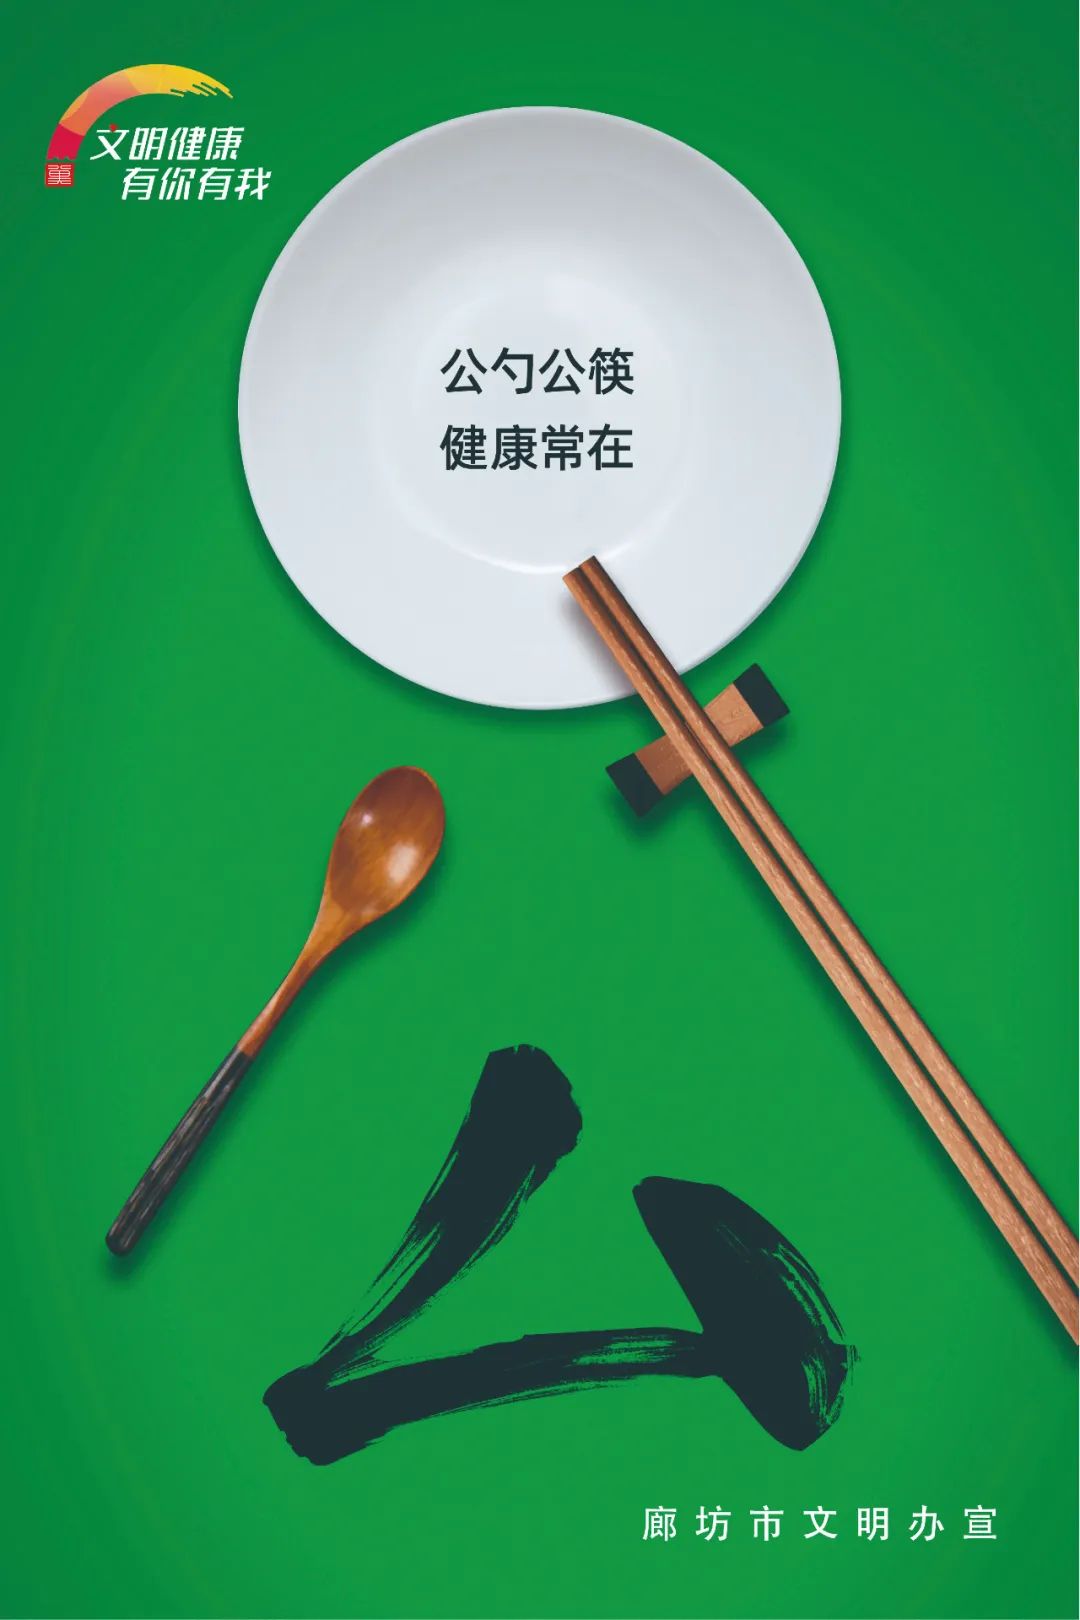 【公益广告】公勺公筷 健康常在